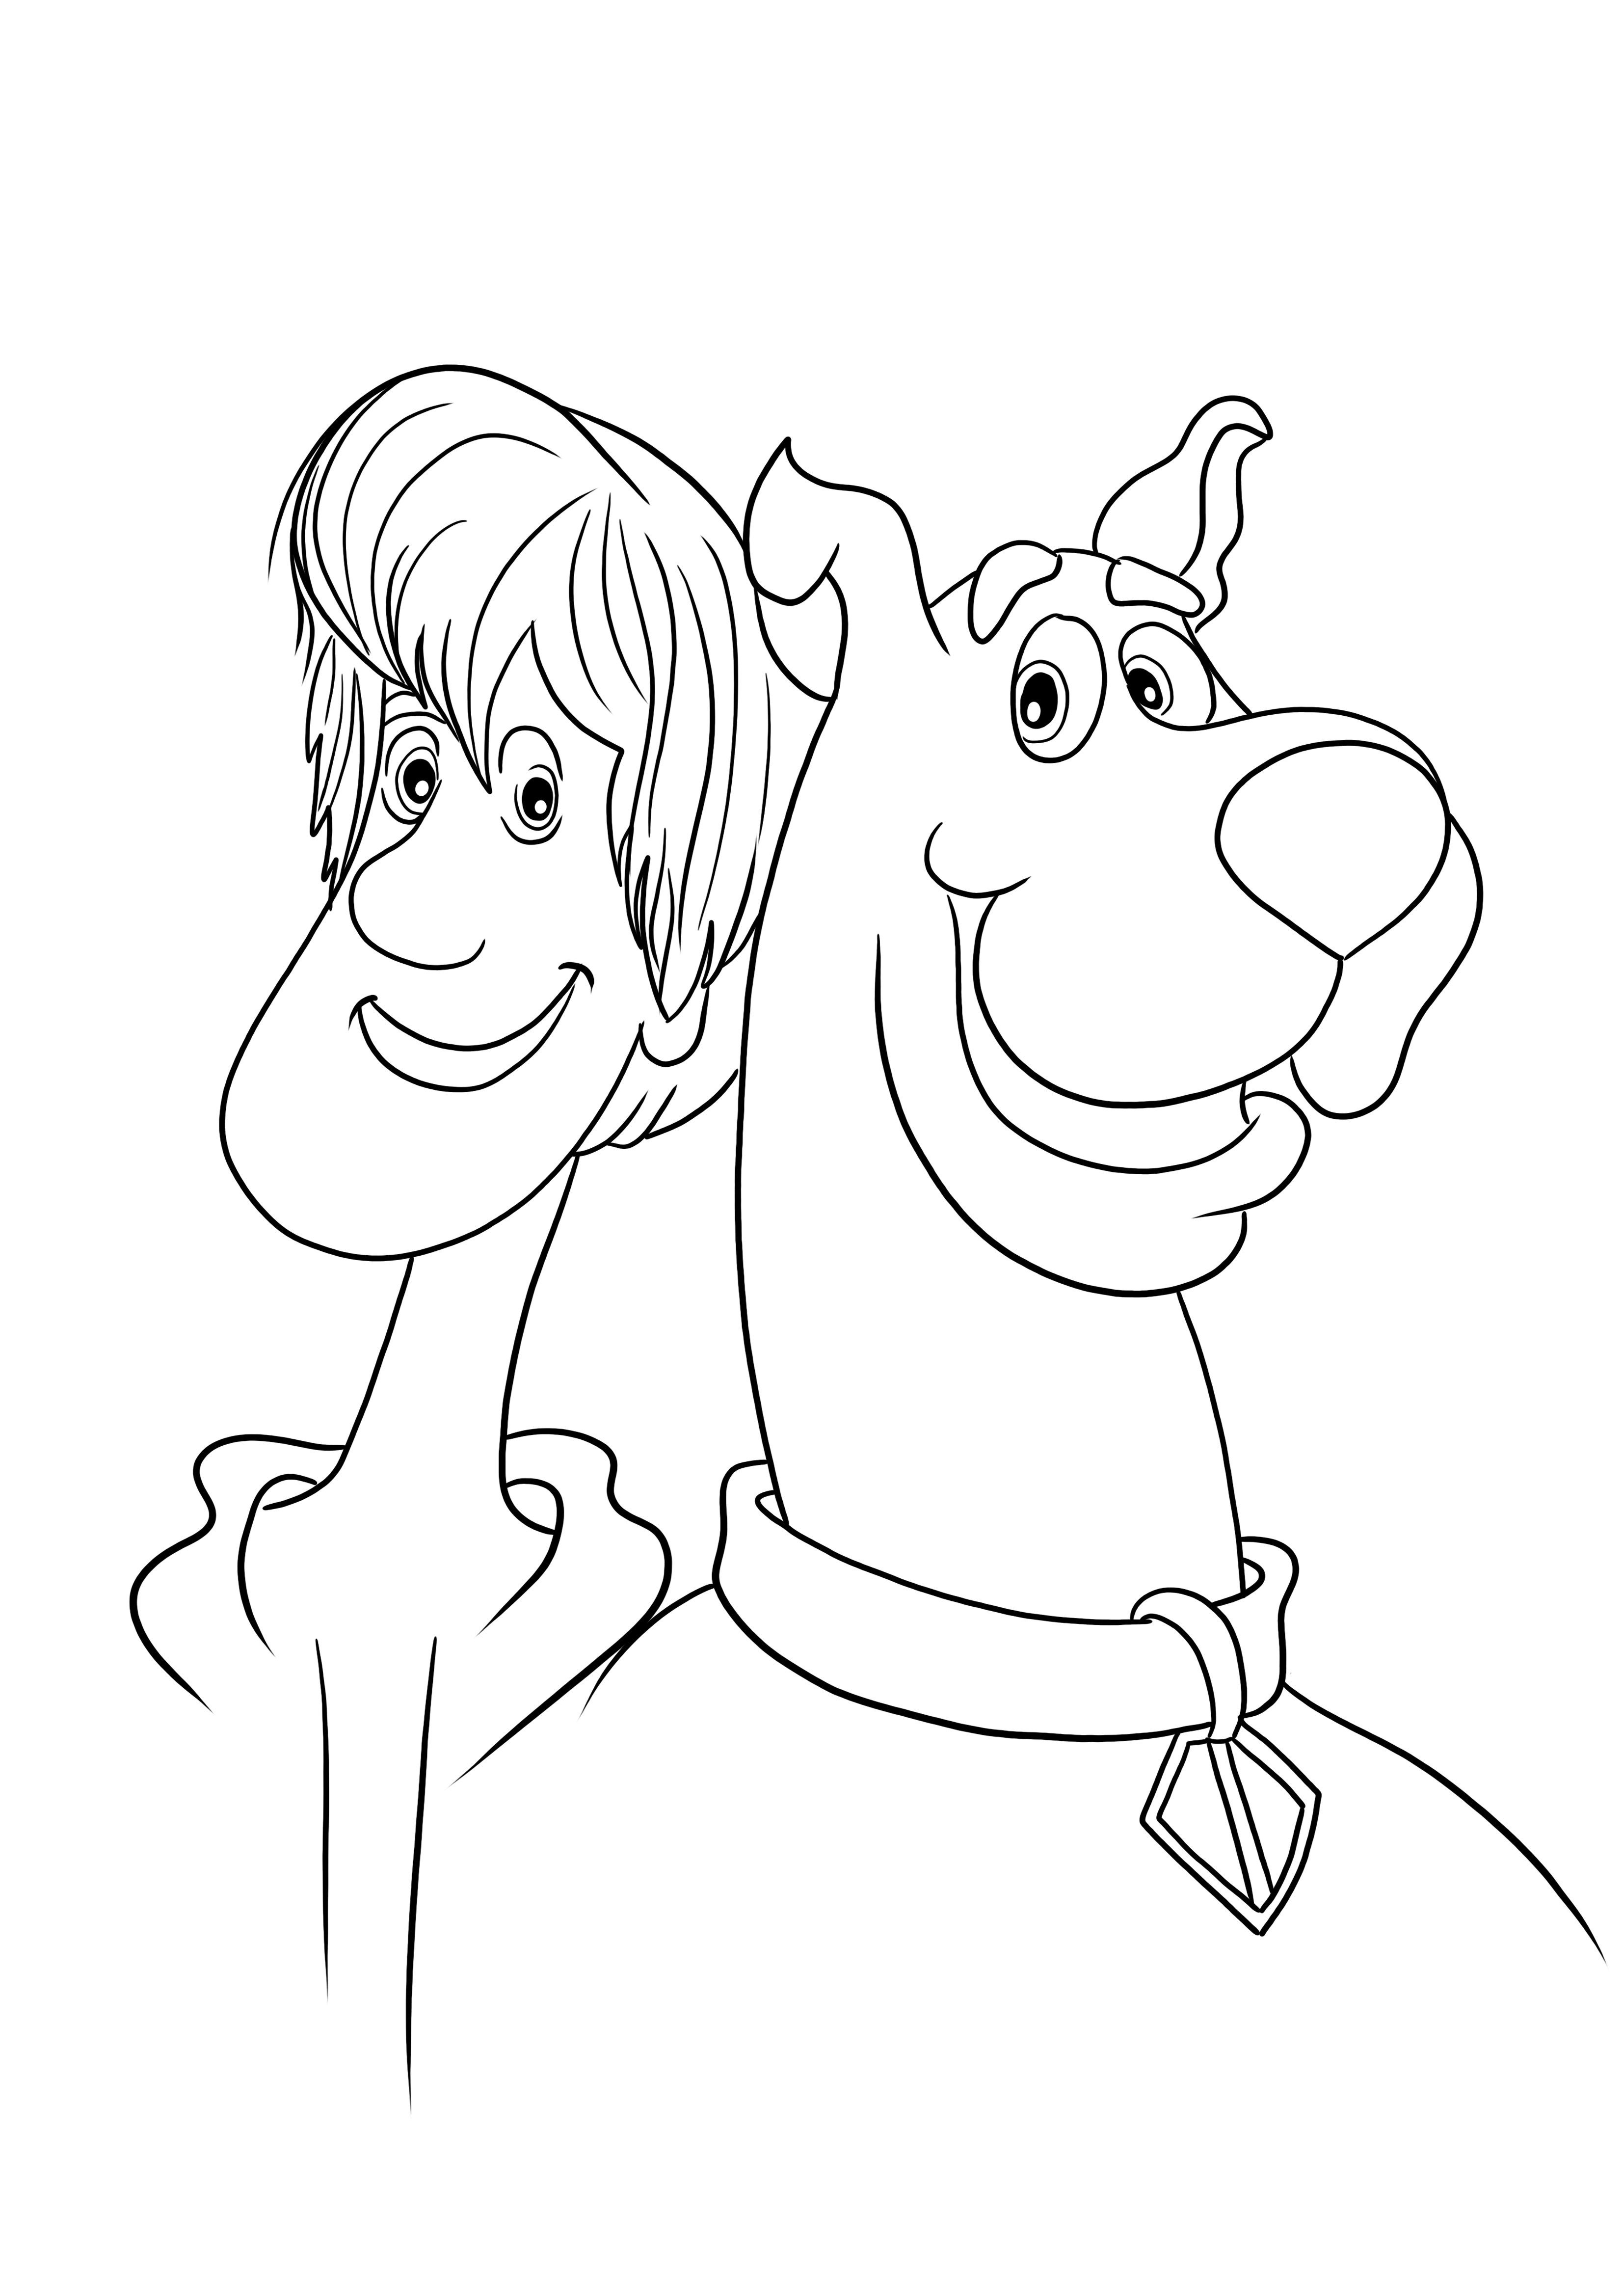 Engraçado Salsicha e seu amigo Scooby página fácil de colorir e imprimir para crianças